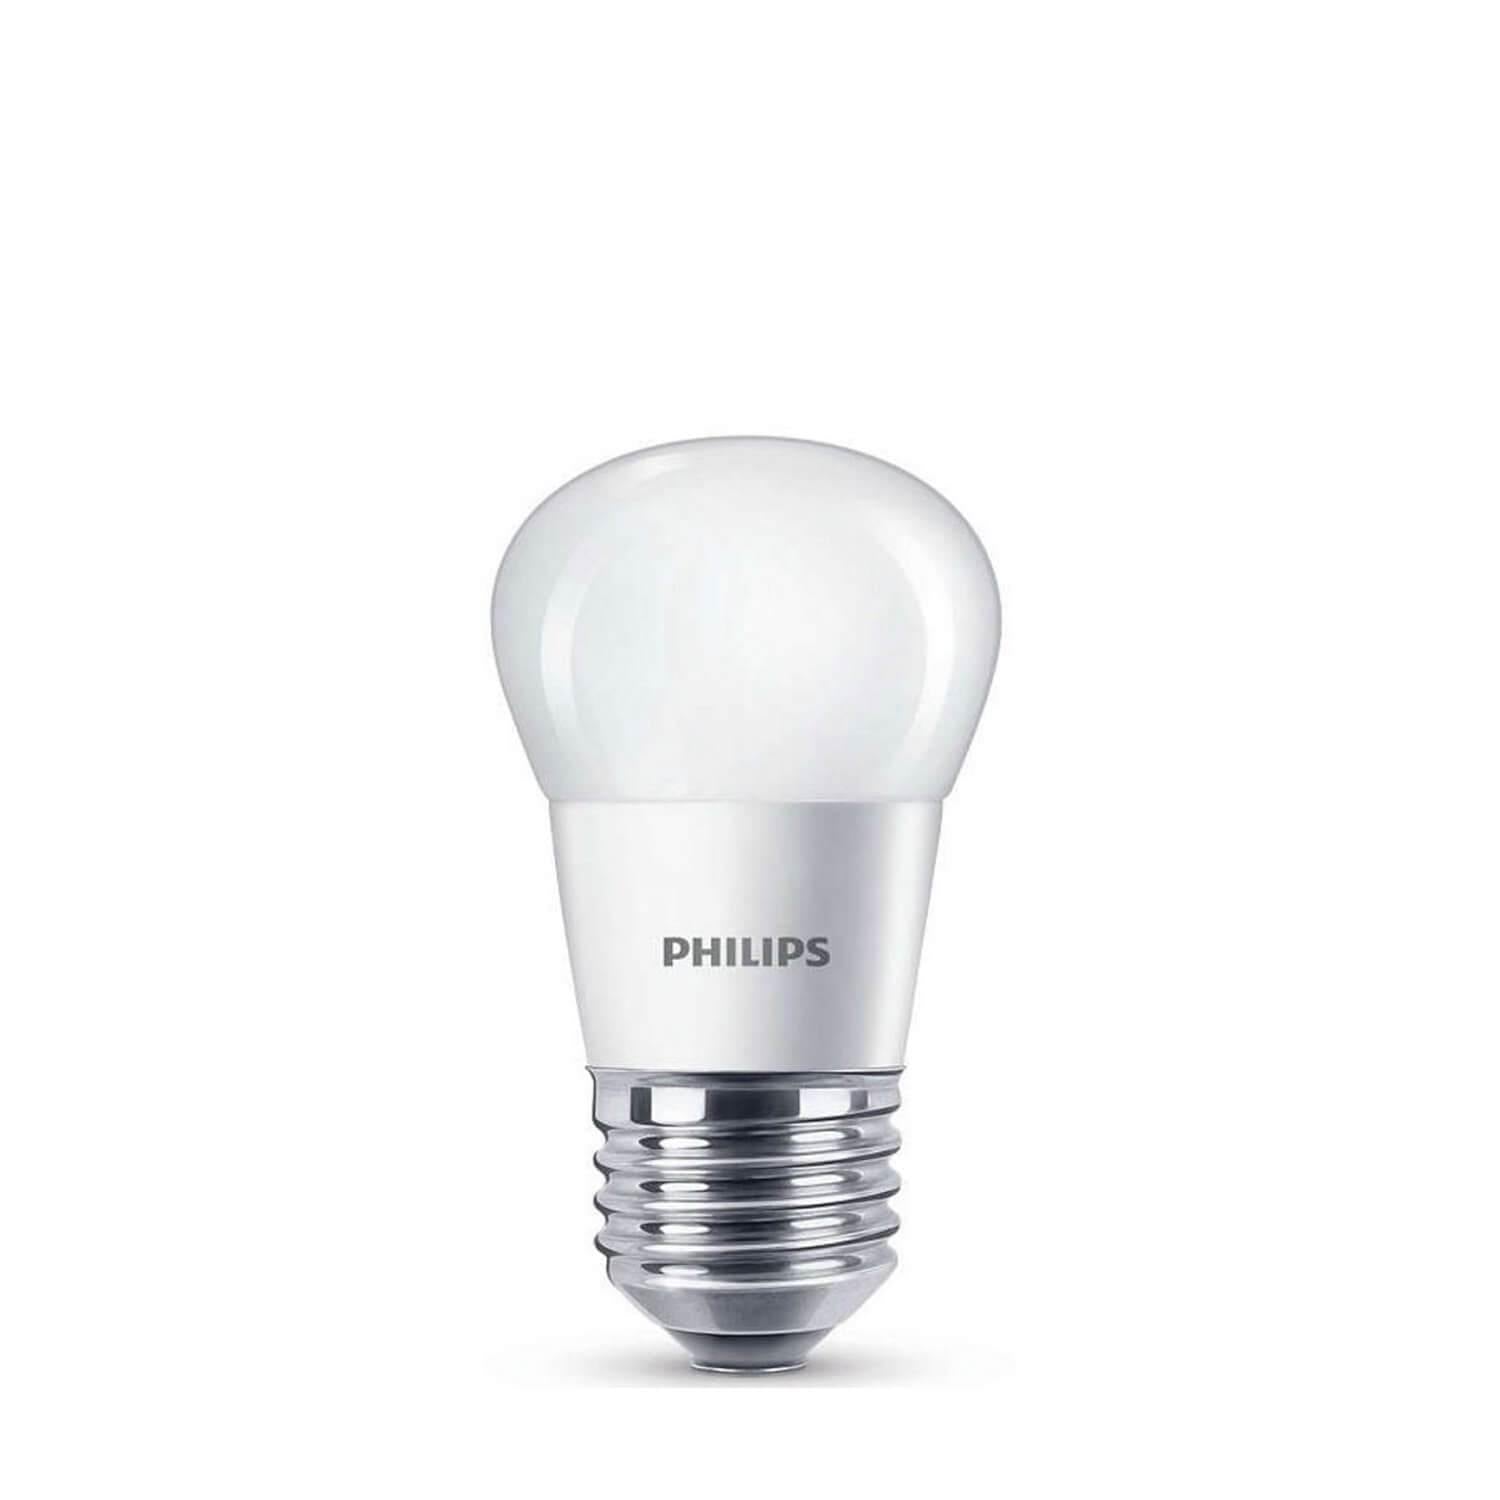 Bec LED Philips P45 E27 5.5W 470 lumeni, cu glob mat Domicilio pentru veioze, lampi suspendate, corpuri de iluminat, lampadare sau lustre